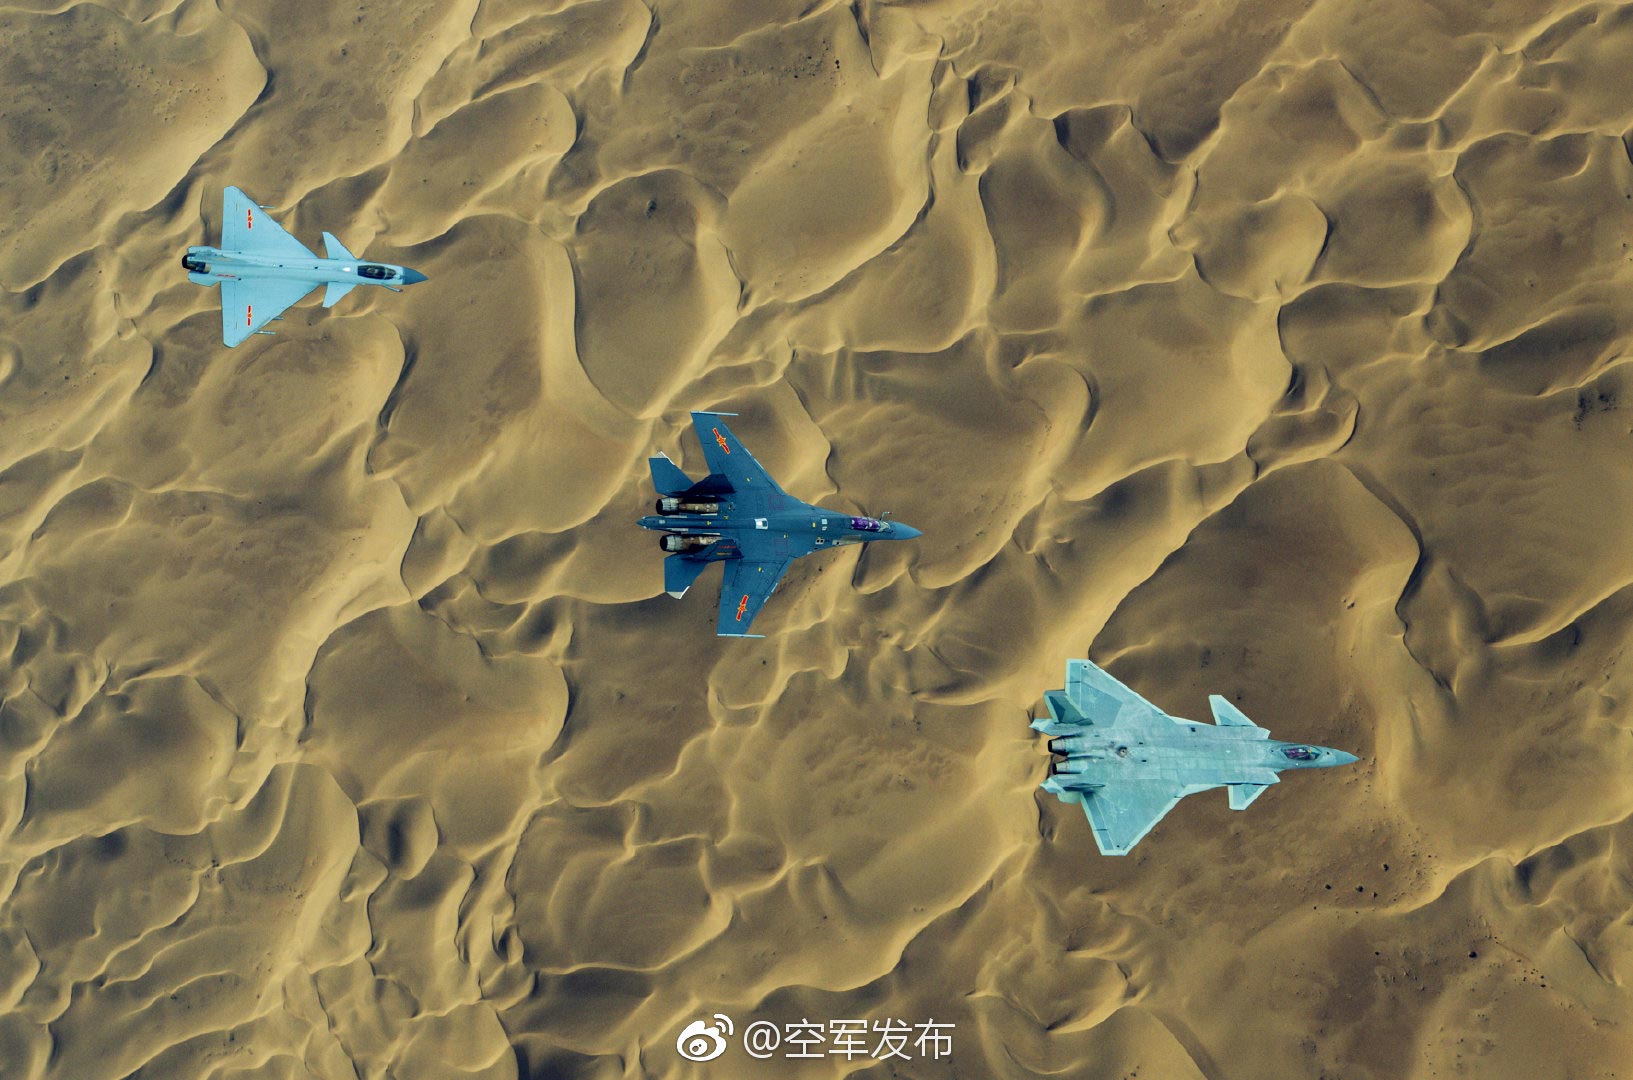 图为“空军发布”微博11月23日发布的歼-10、歼-16、歼-20战机首次同框出现宣传图片。（拖拽图片可查看大图） (2)